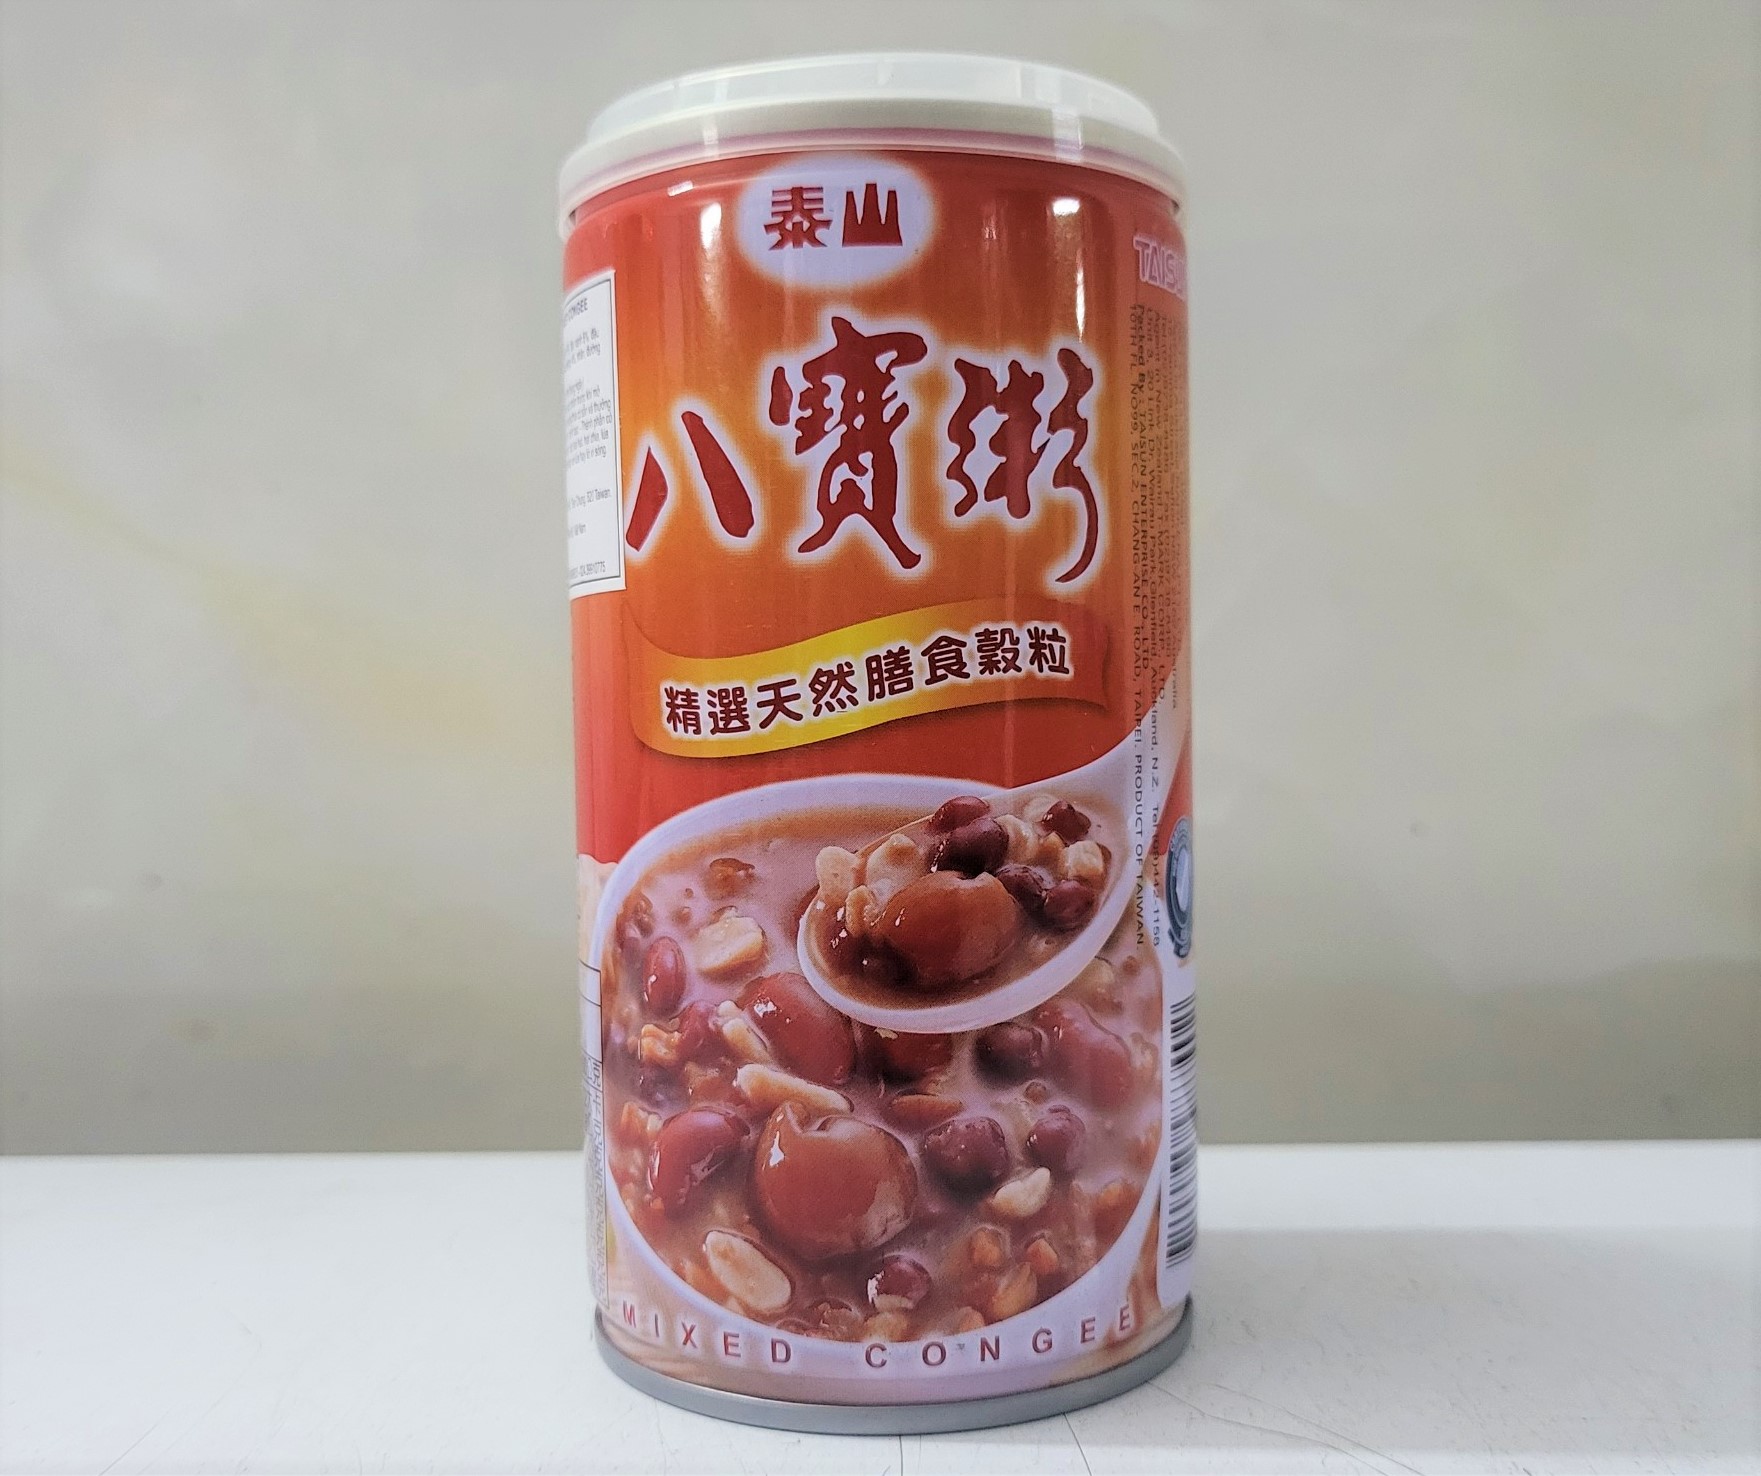 Hộp 375g NGŨ CỐC NGỌT ĂN LIỀN Taiwan TAISUN Mixed Congee Instant